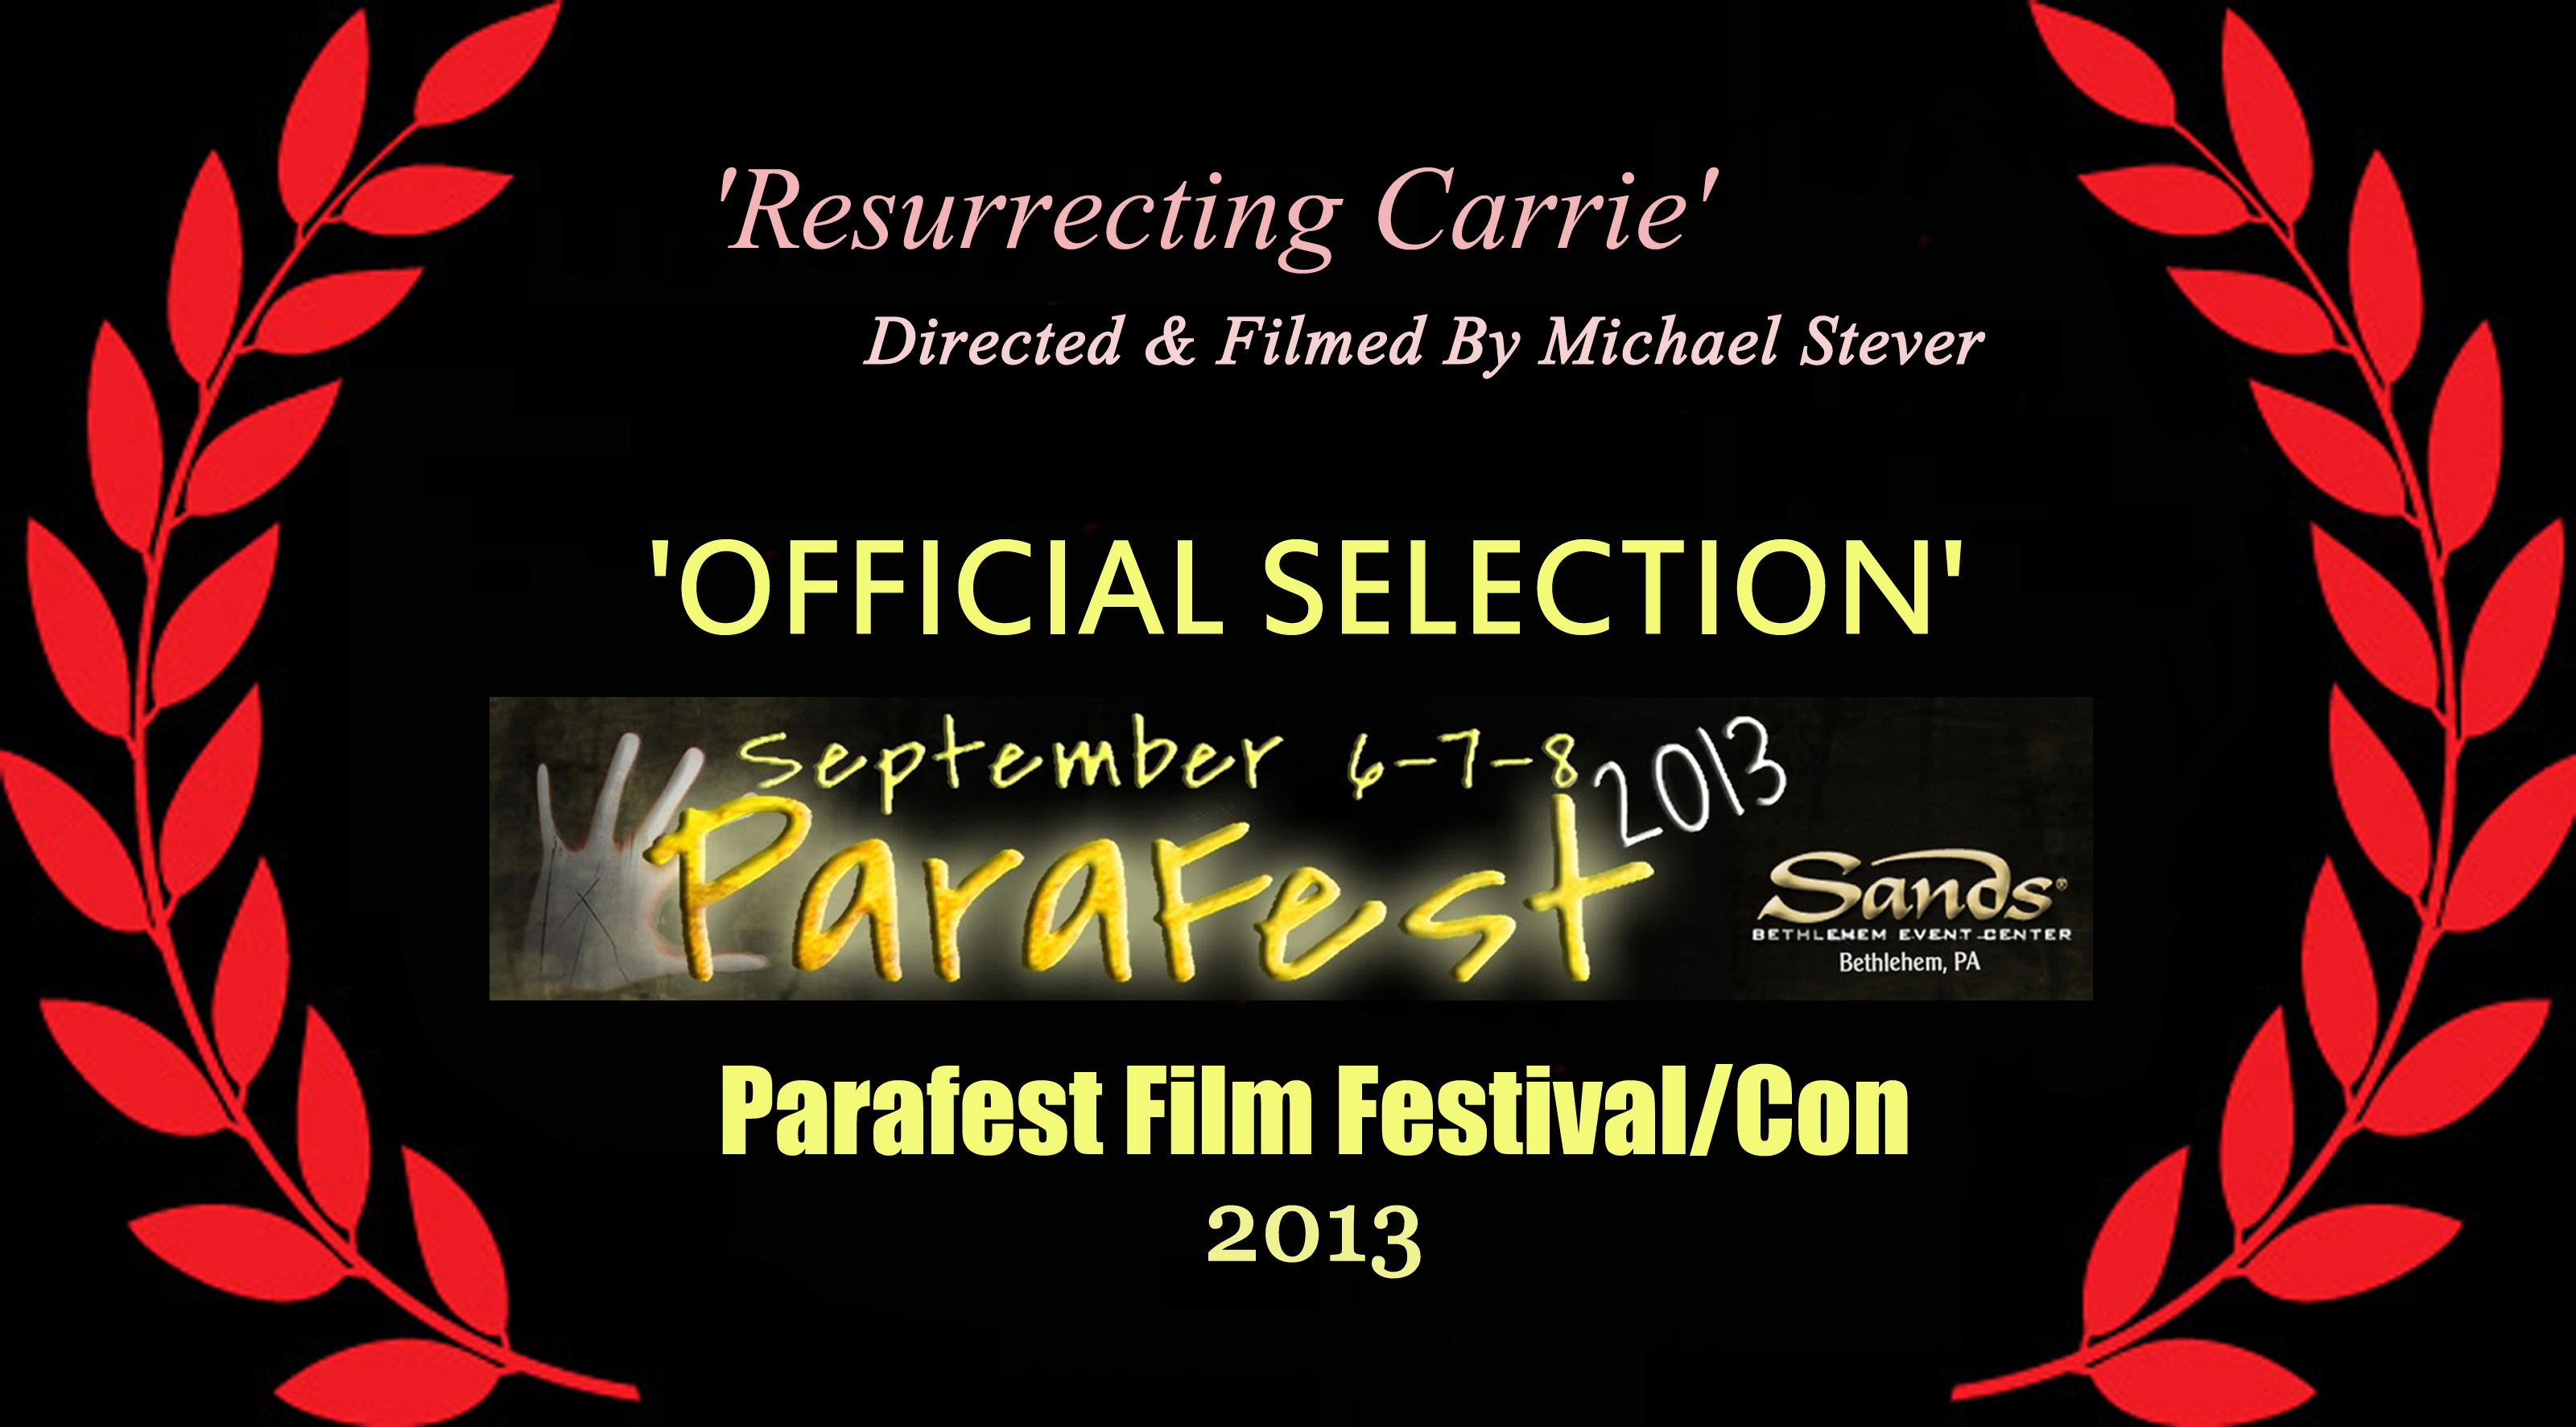 Official selection laurel for 'Para fest Film Festival/Convention' 2013